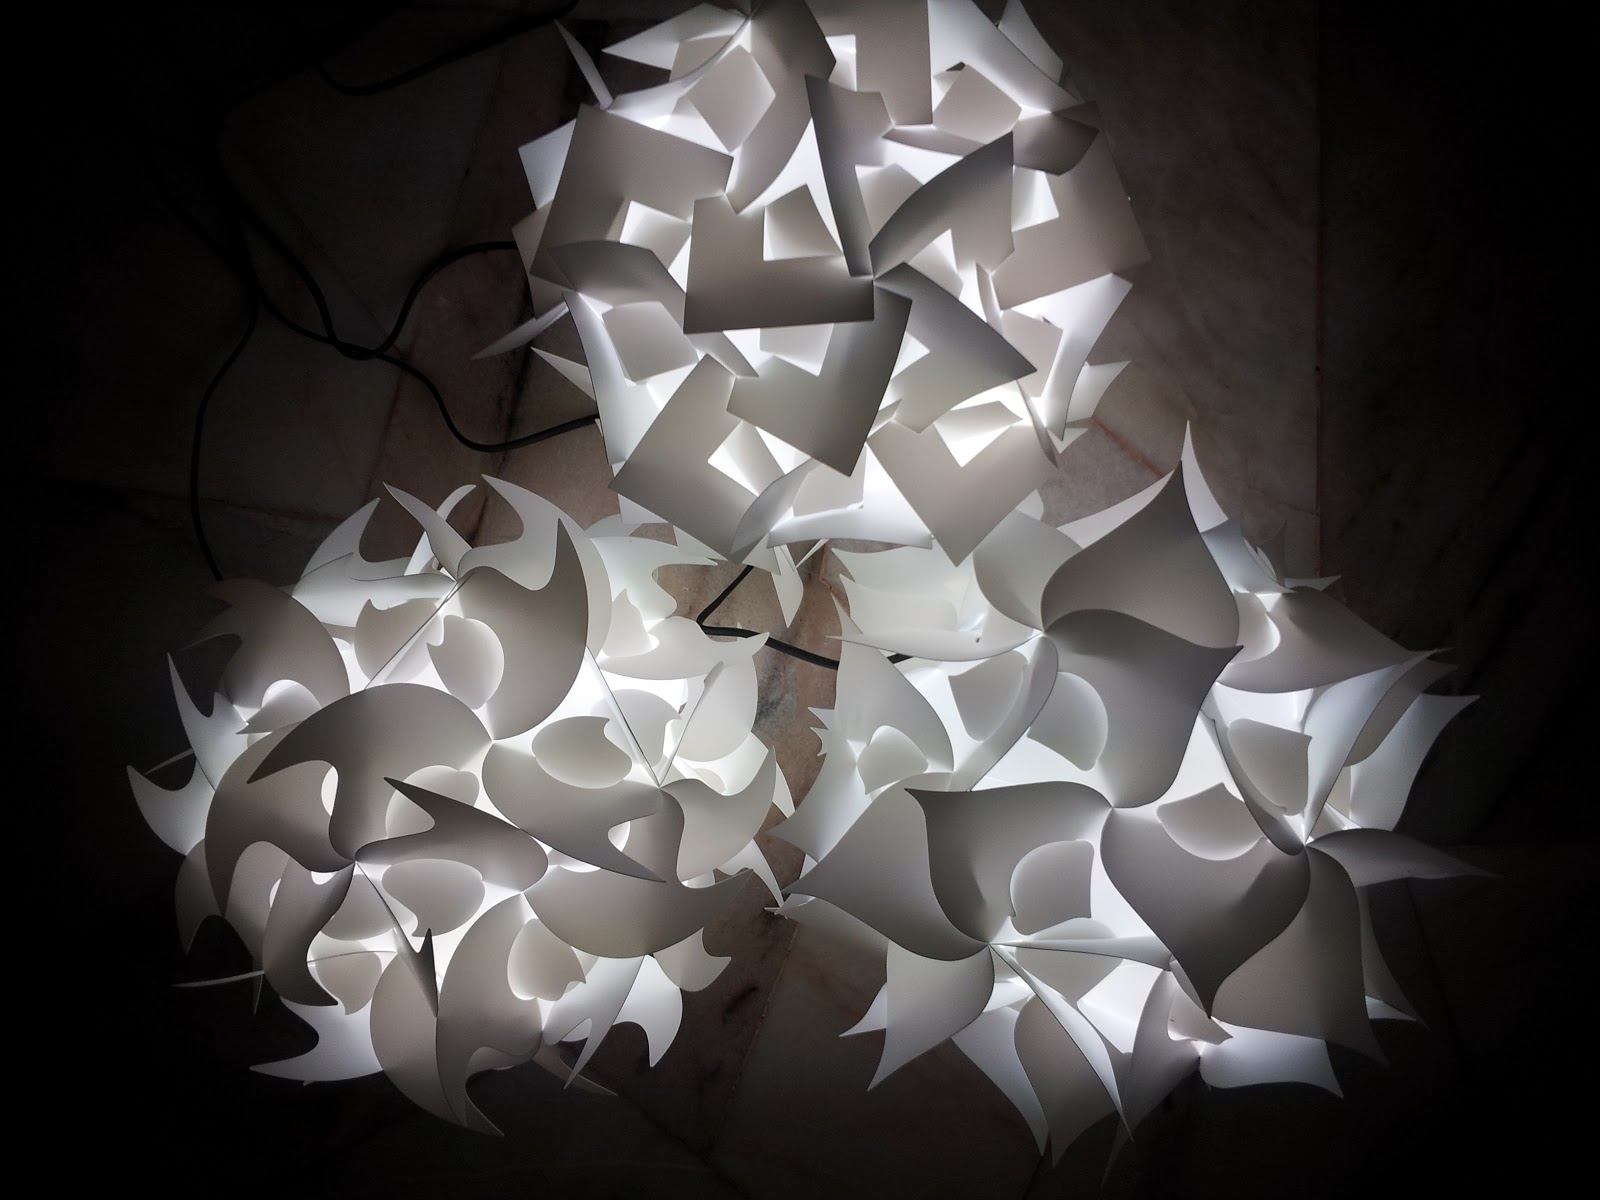 VLightDeco IQ Light Puzzle Pendant Jigsaw Lamp Styles: 09/09/12